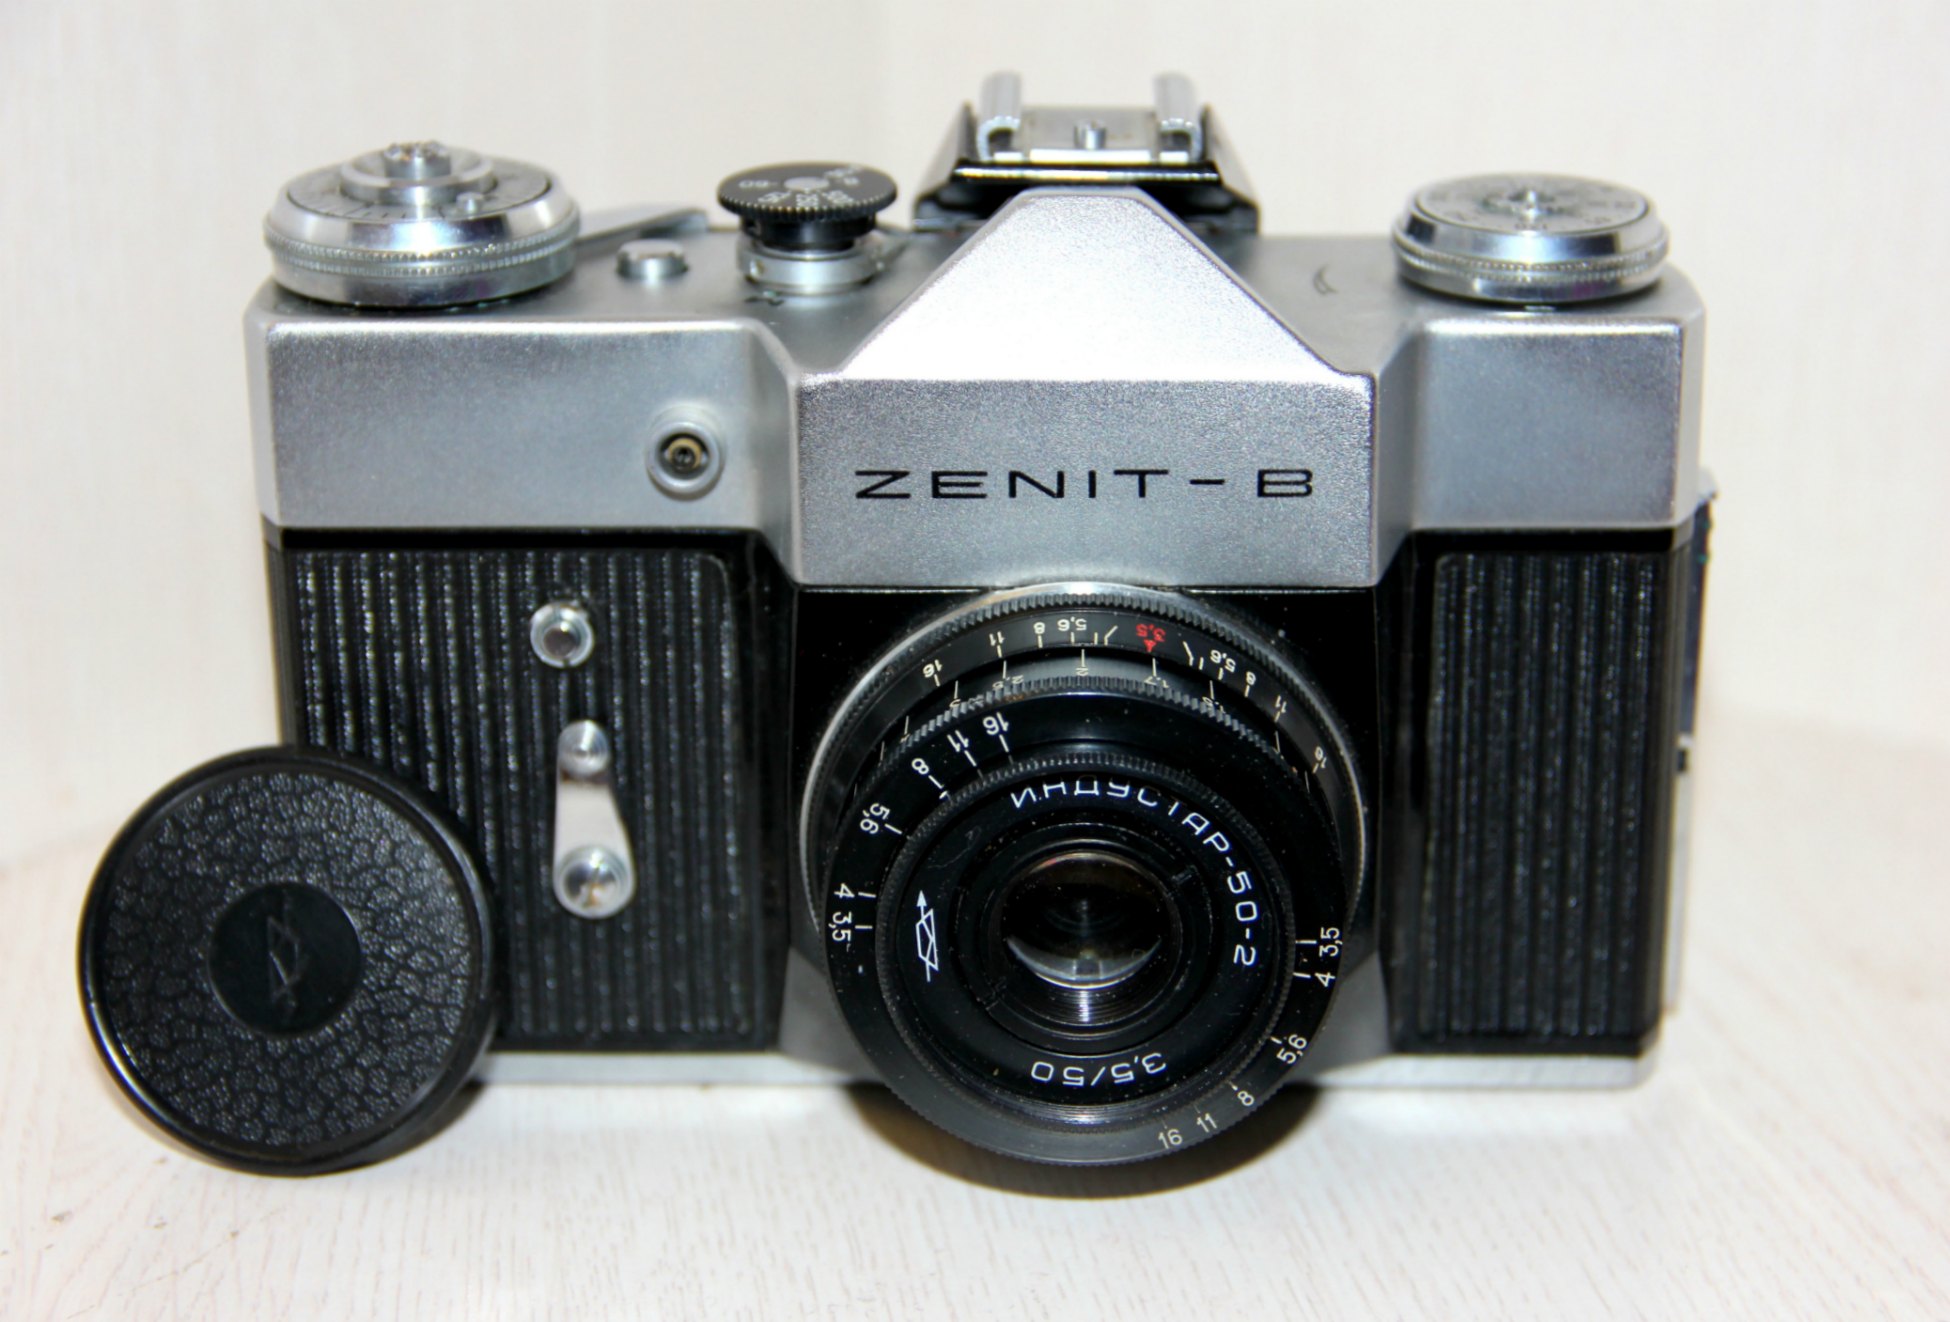 Обзор лучших фотоаппаратов марки «zenit»: модели 1, с, 3м, 19, е, ем, вм, ет, ttl